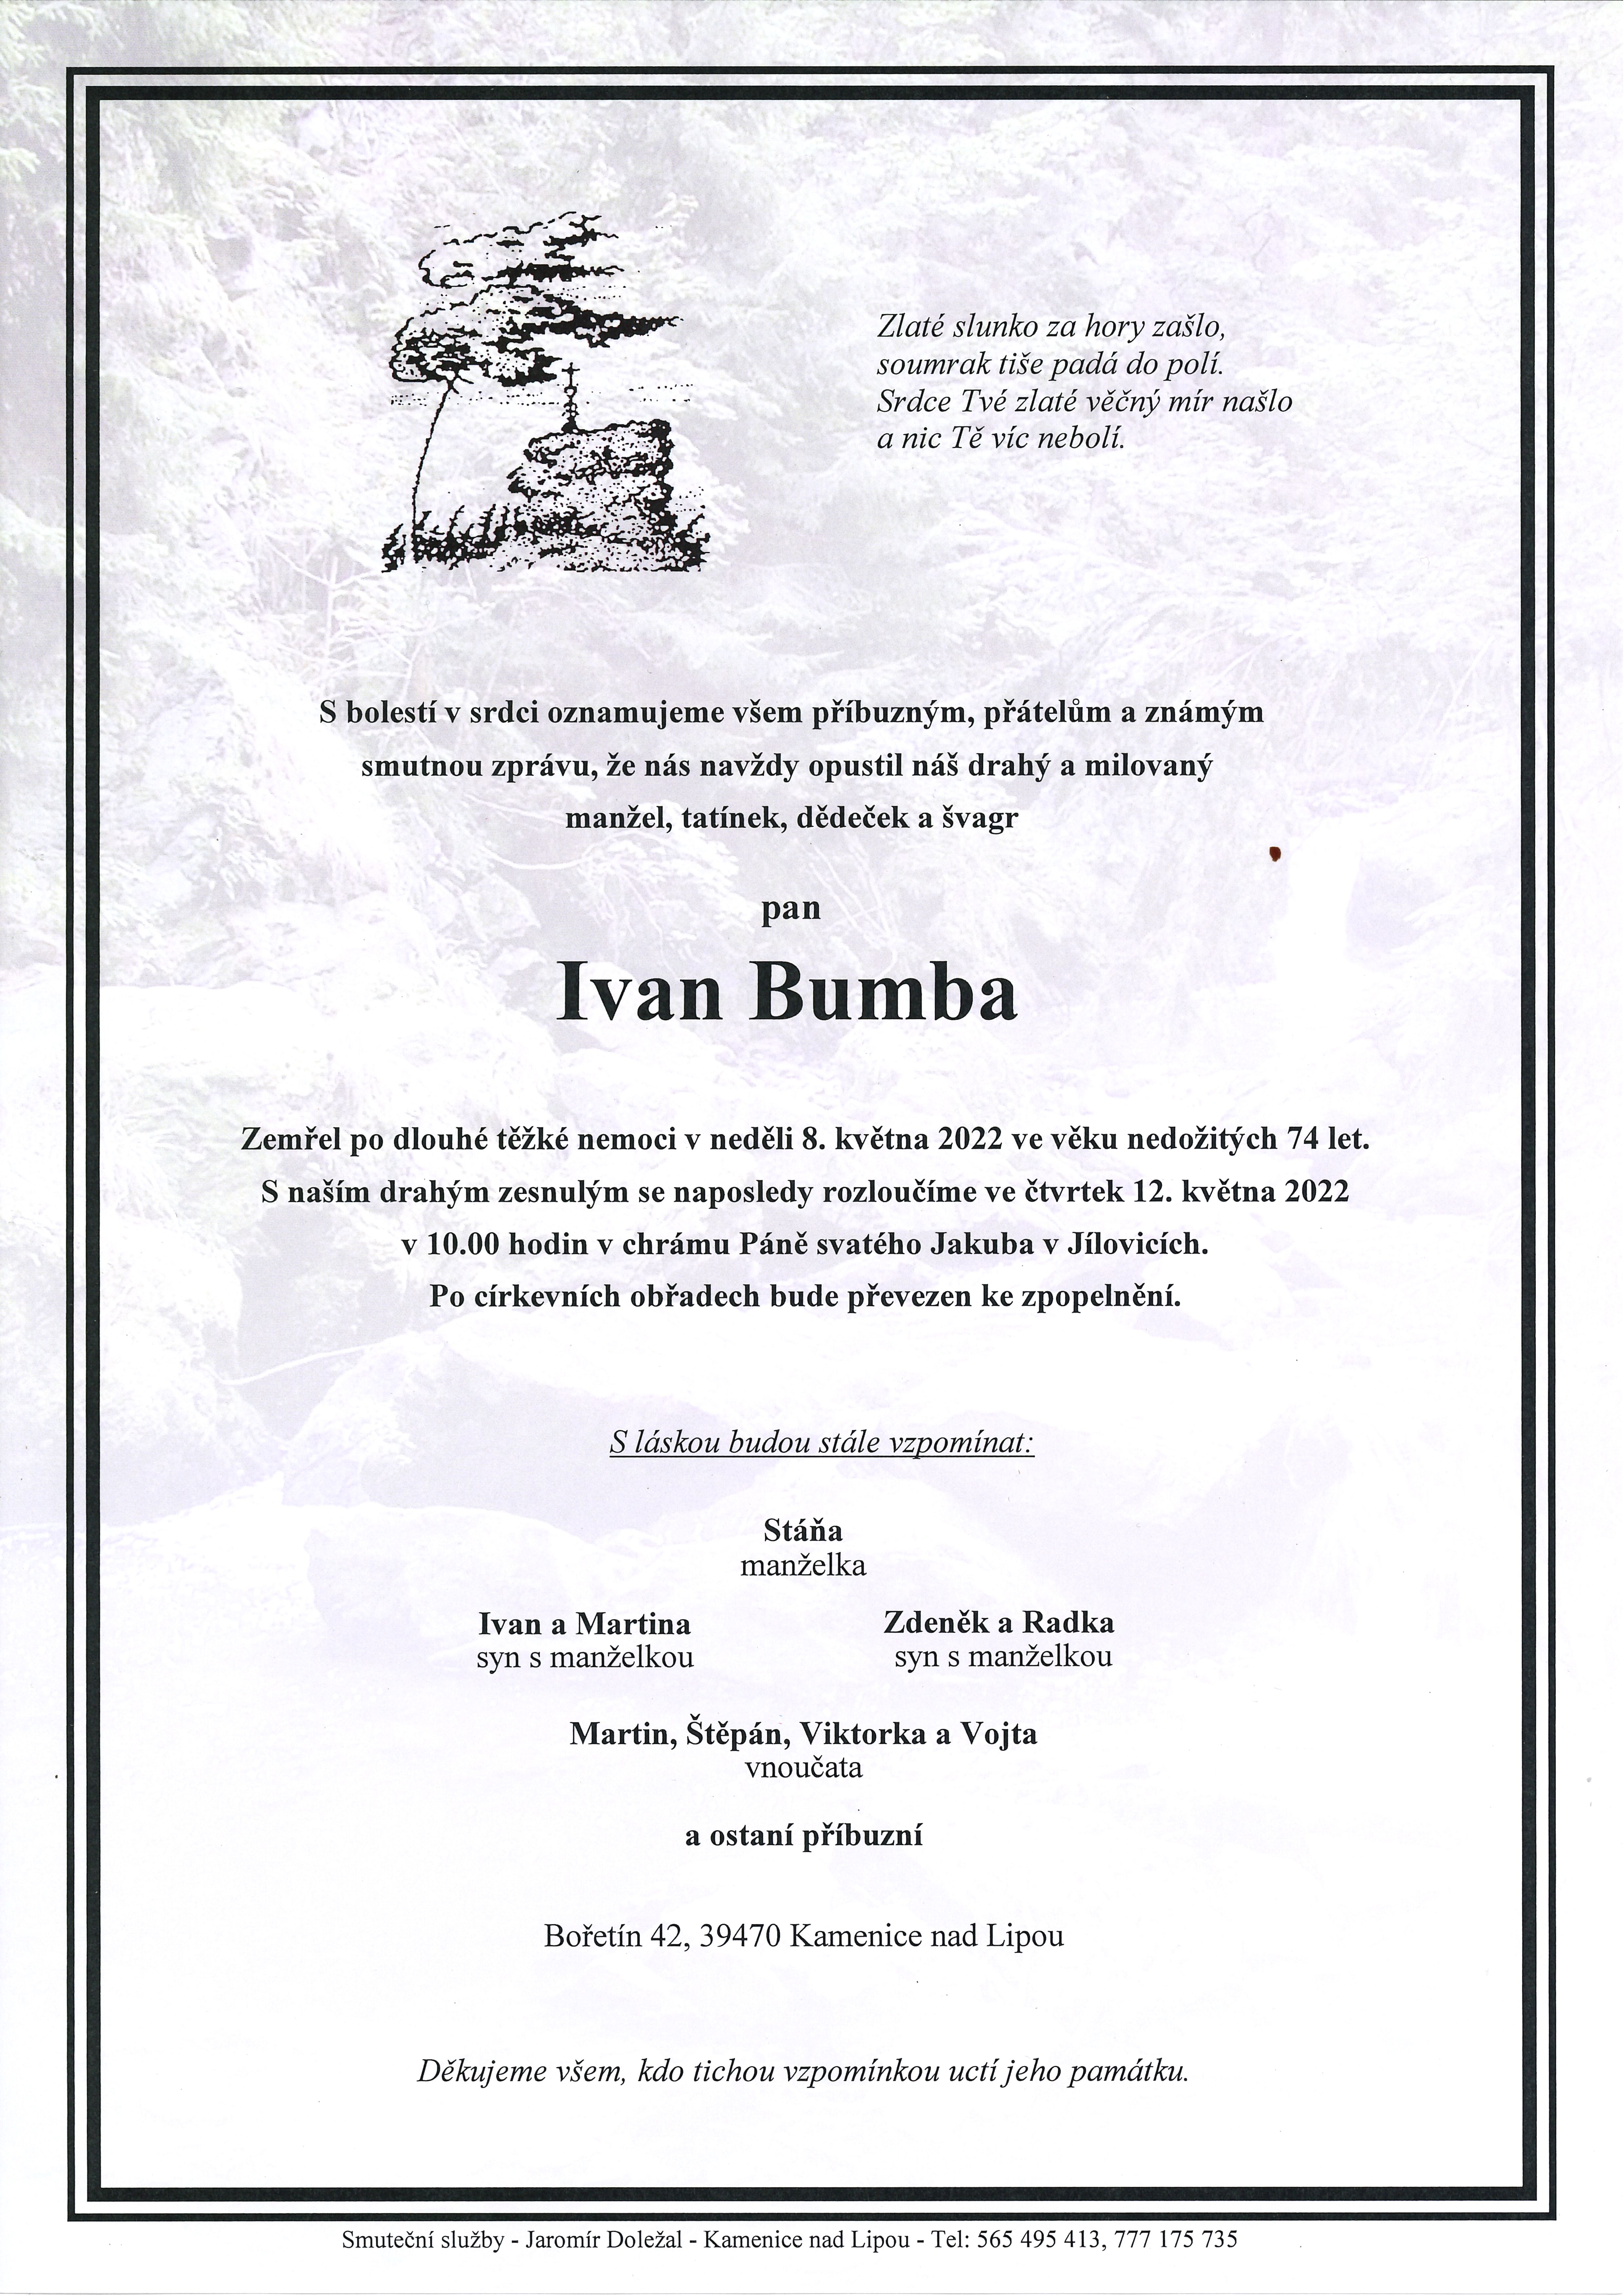 Ivan Bumba